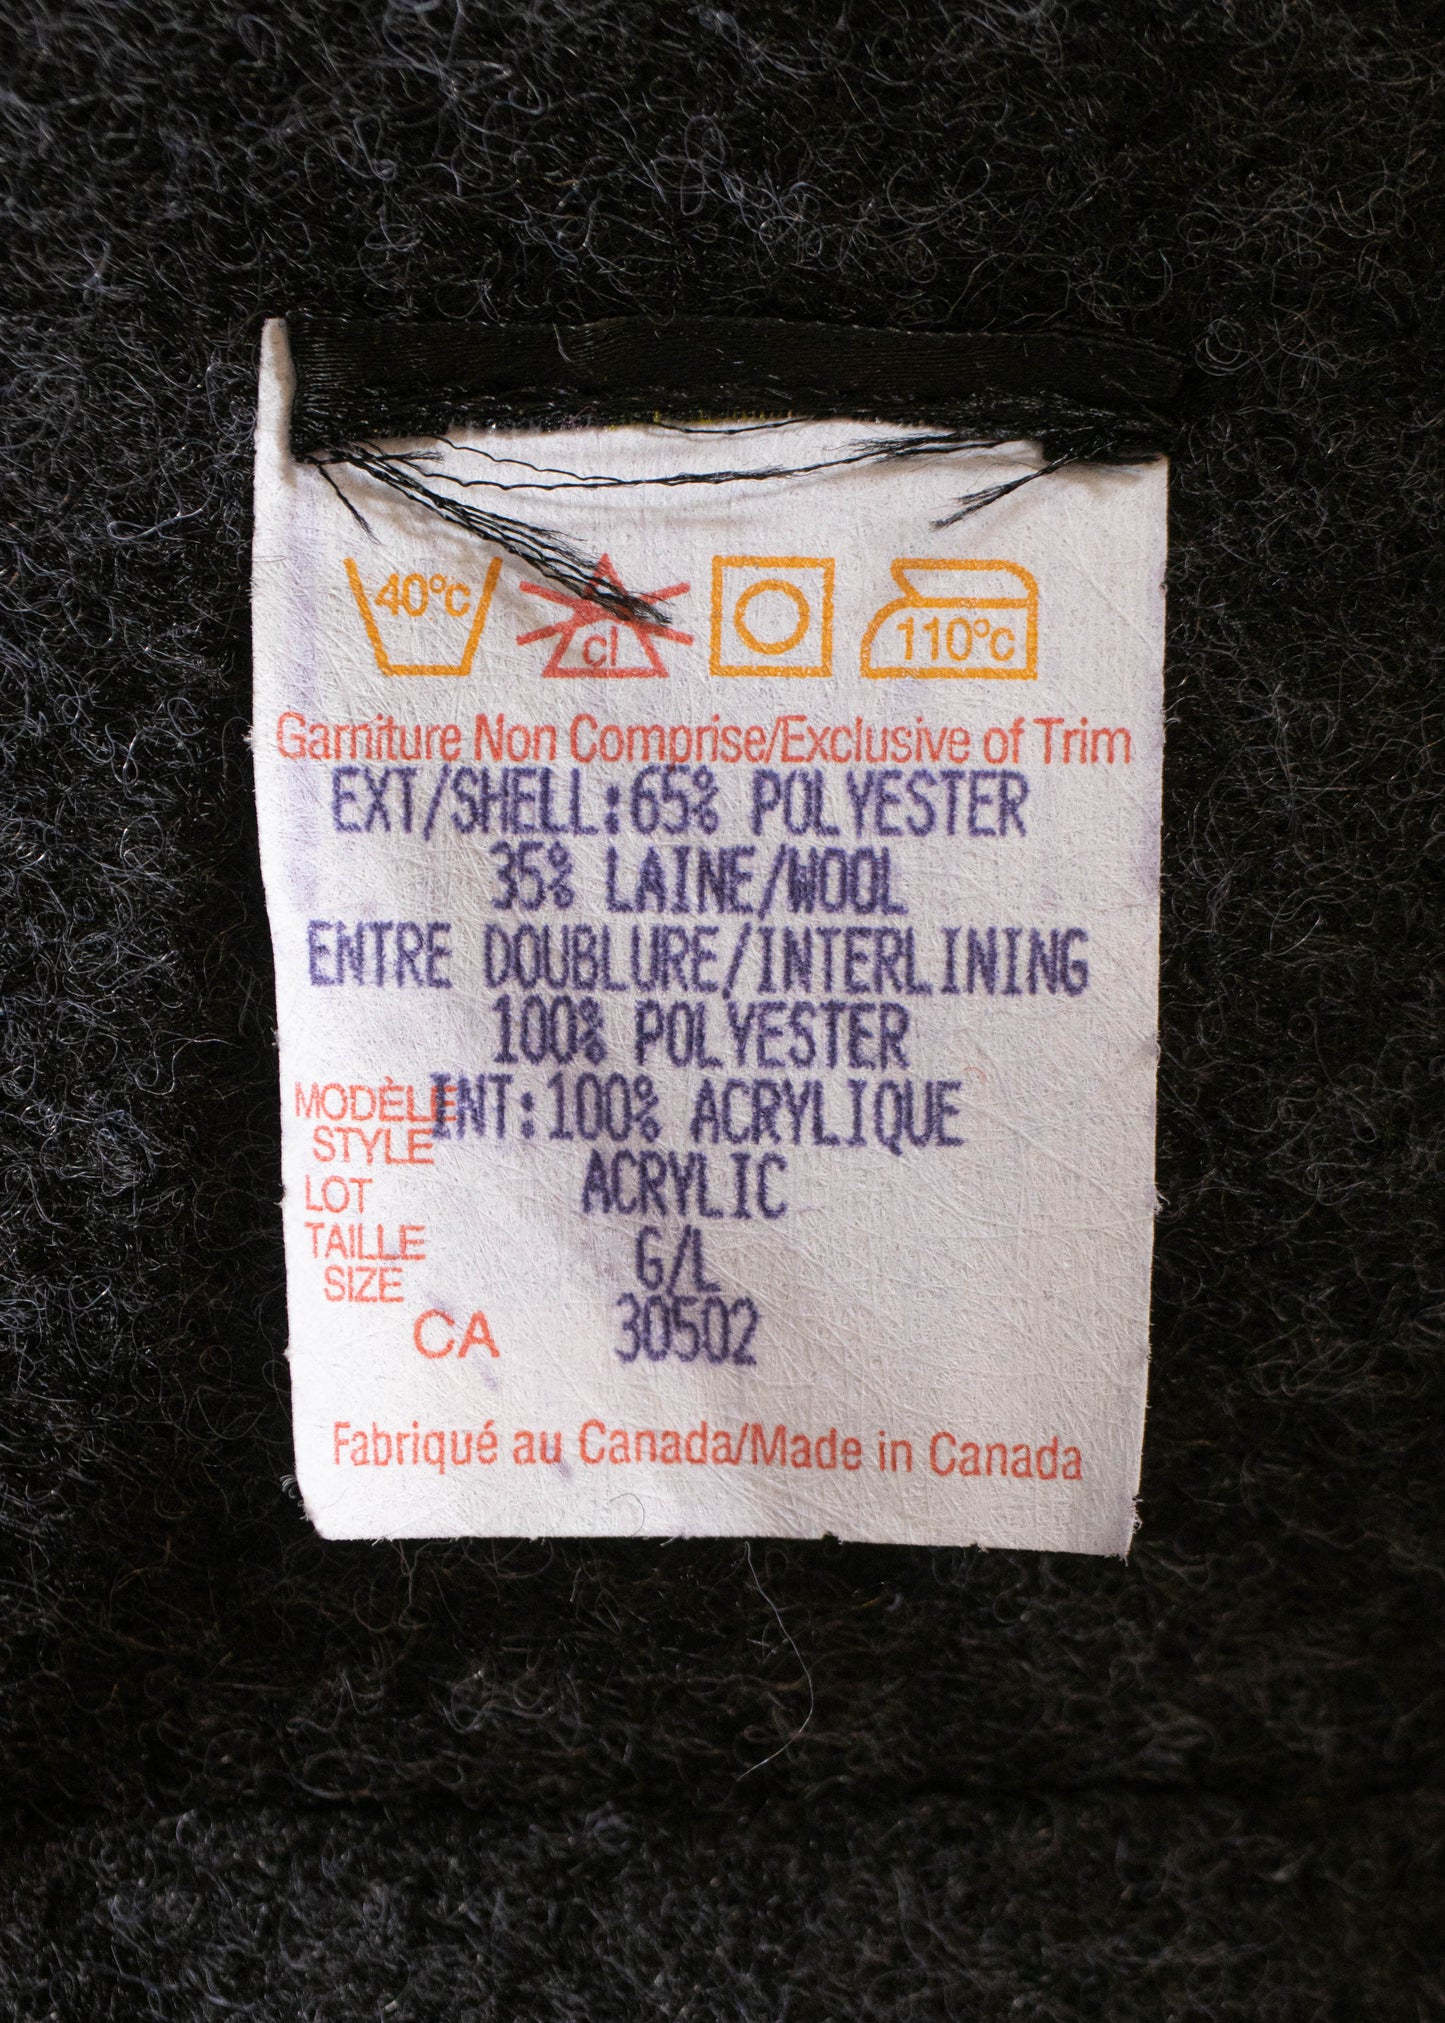 1980s Deadstock Workwear Vest Size M/L